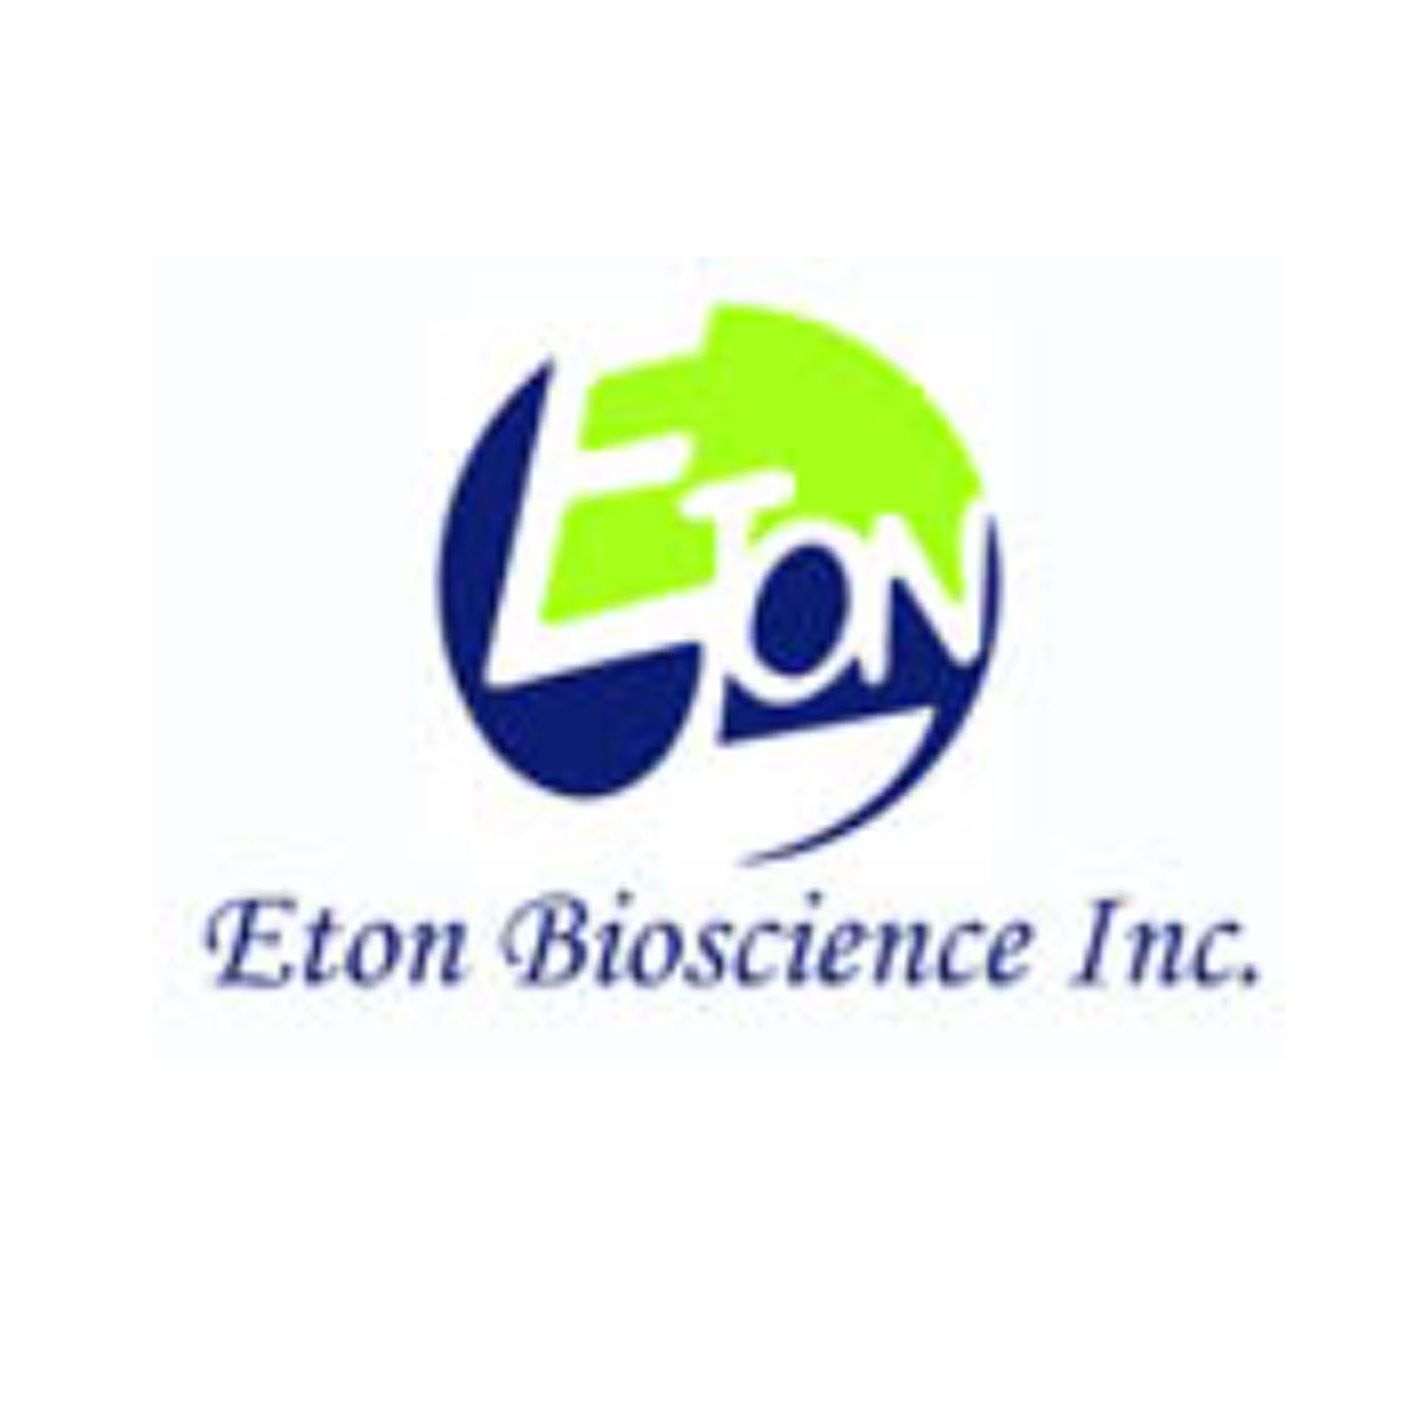 Eton Bioscience  代谢检测试剂盒、ELISA试剂盒 ，细胞因子、抗生素；腺病毒、原代及细胞系、细胞增殖检测、免疫组化抗体；核酸酶、蛋白酶/蛋白激酶、蛋白检测试剂等